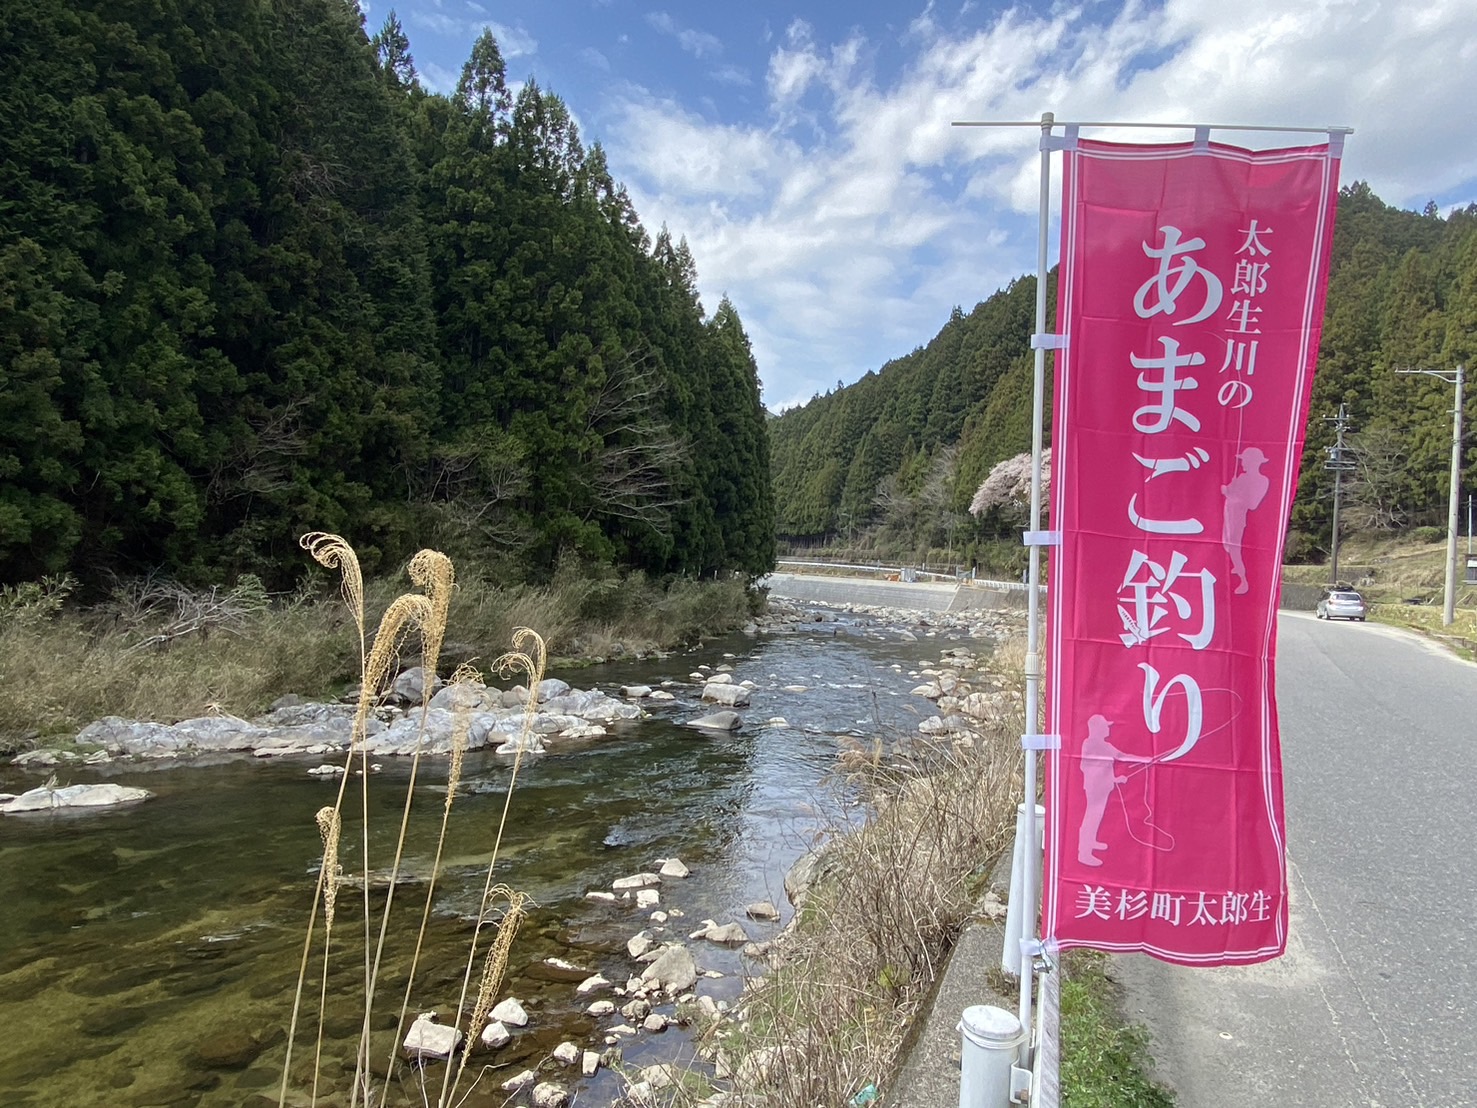 名張川の渓流釣りが解禁しました。